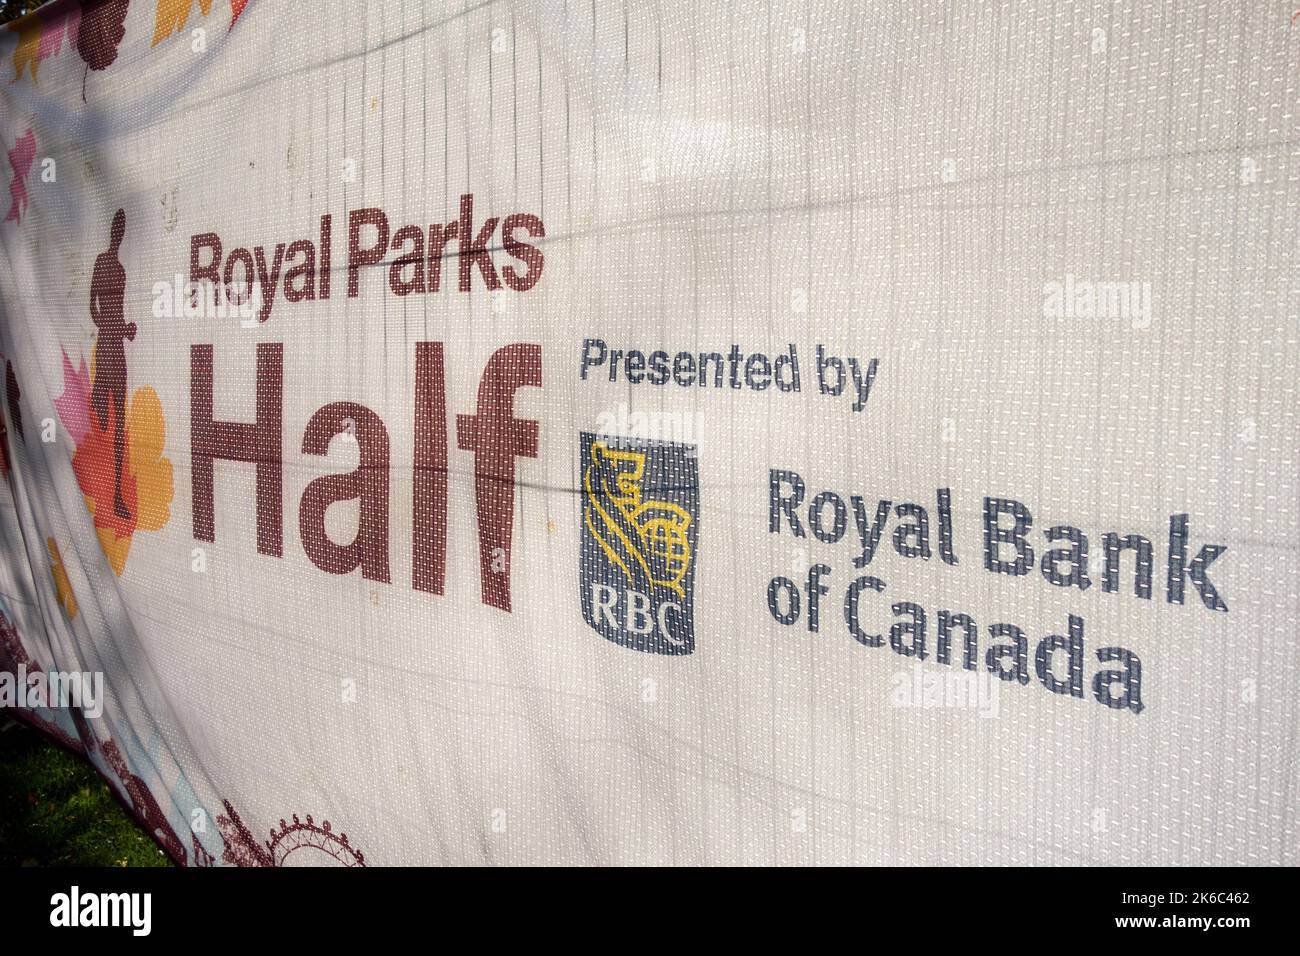 Royal Bank of Canada signage at this year's Royal Parks Half Marathon, Hyde Park, London, England, UK Stock Photo